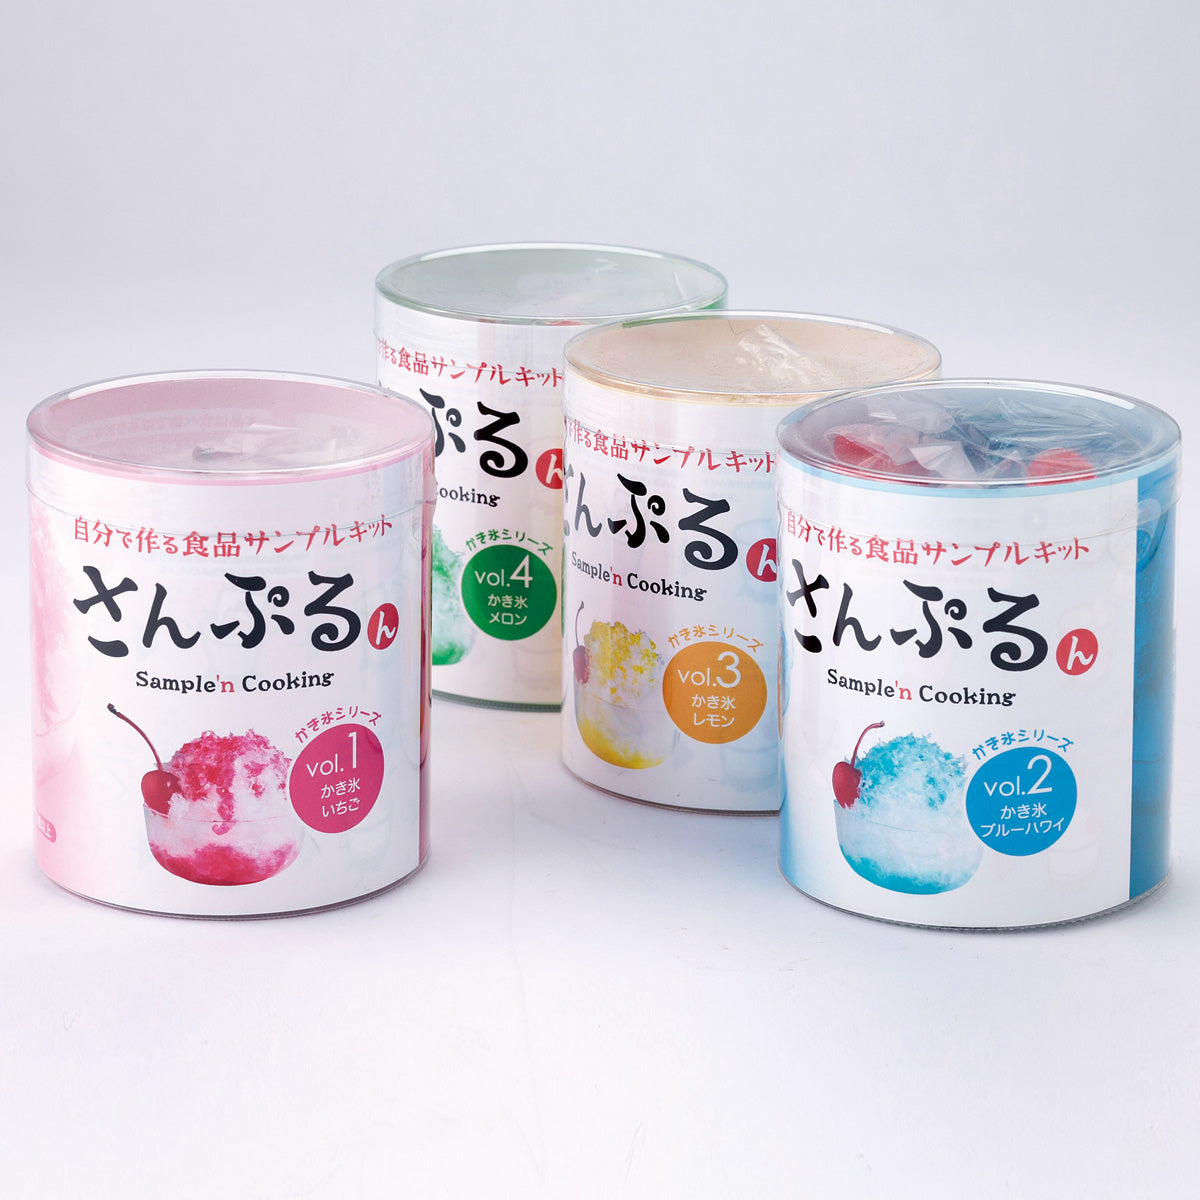 自分で作る食品サンプル製作キット｜さんぷるん かき氷 Vol.1「イチゴ 